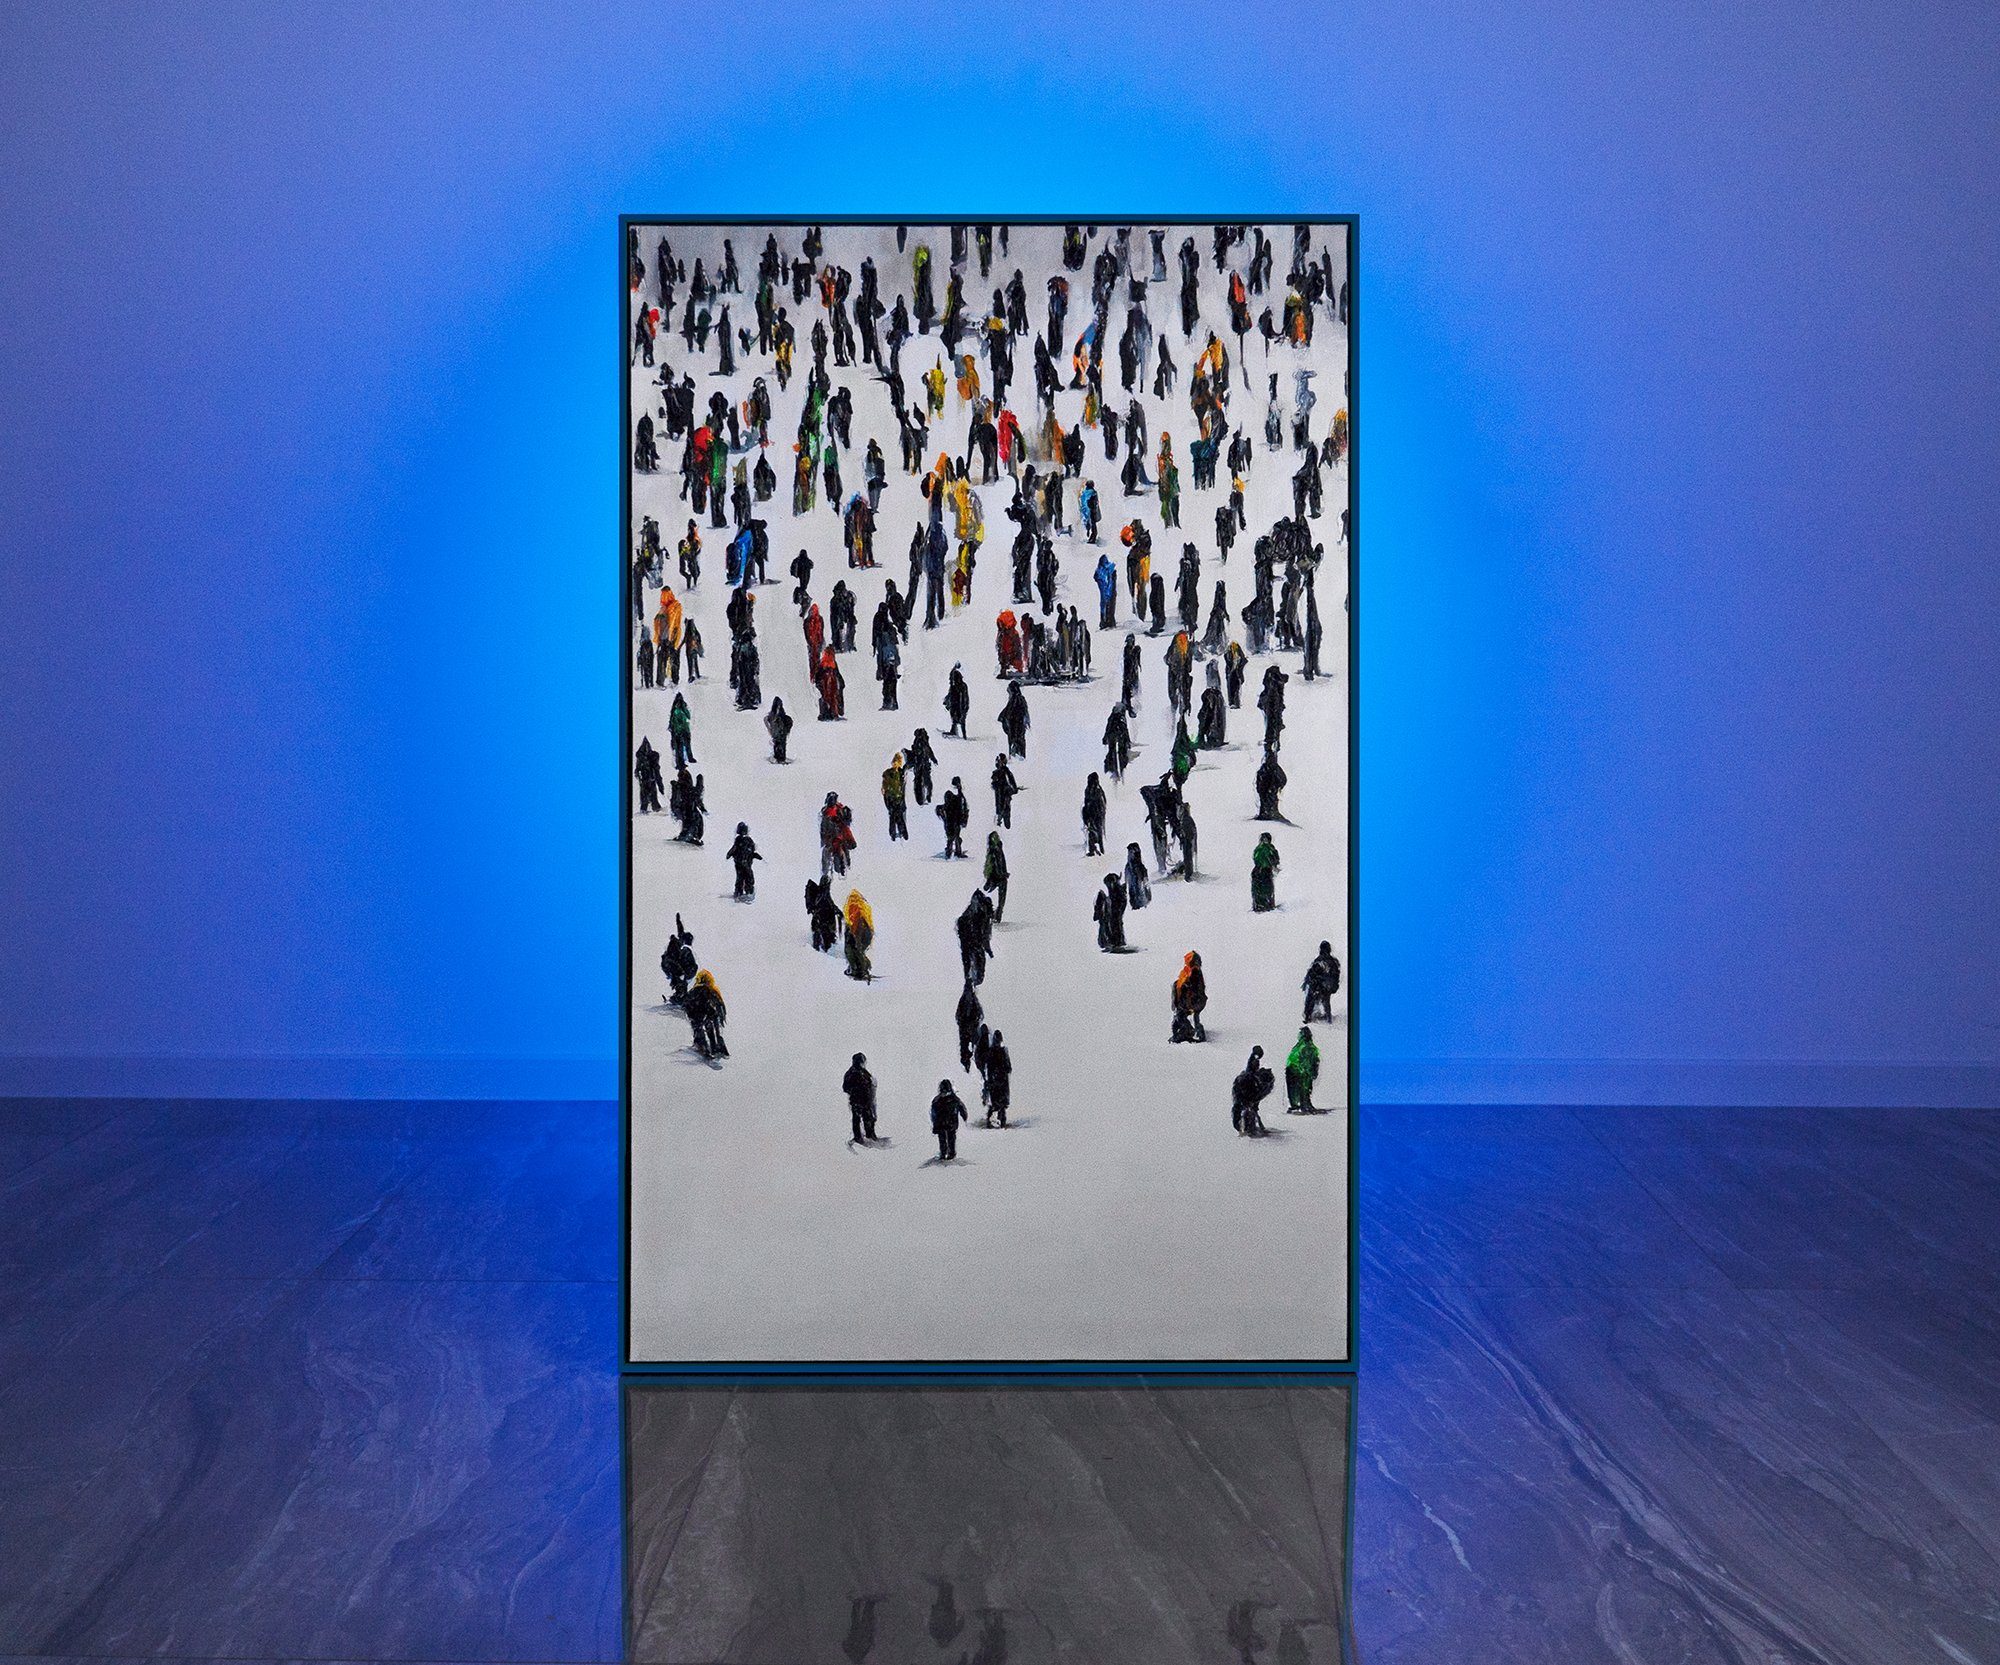 YS-Art in Rahmen Gemälde Mit Kollektive Bewegung, Blau Menschen